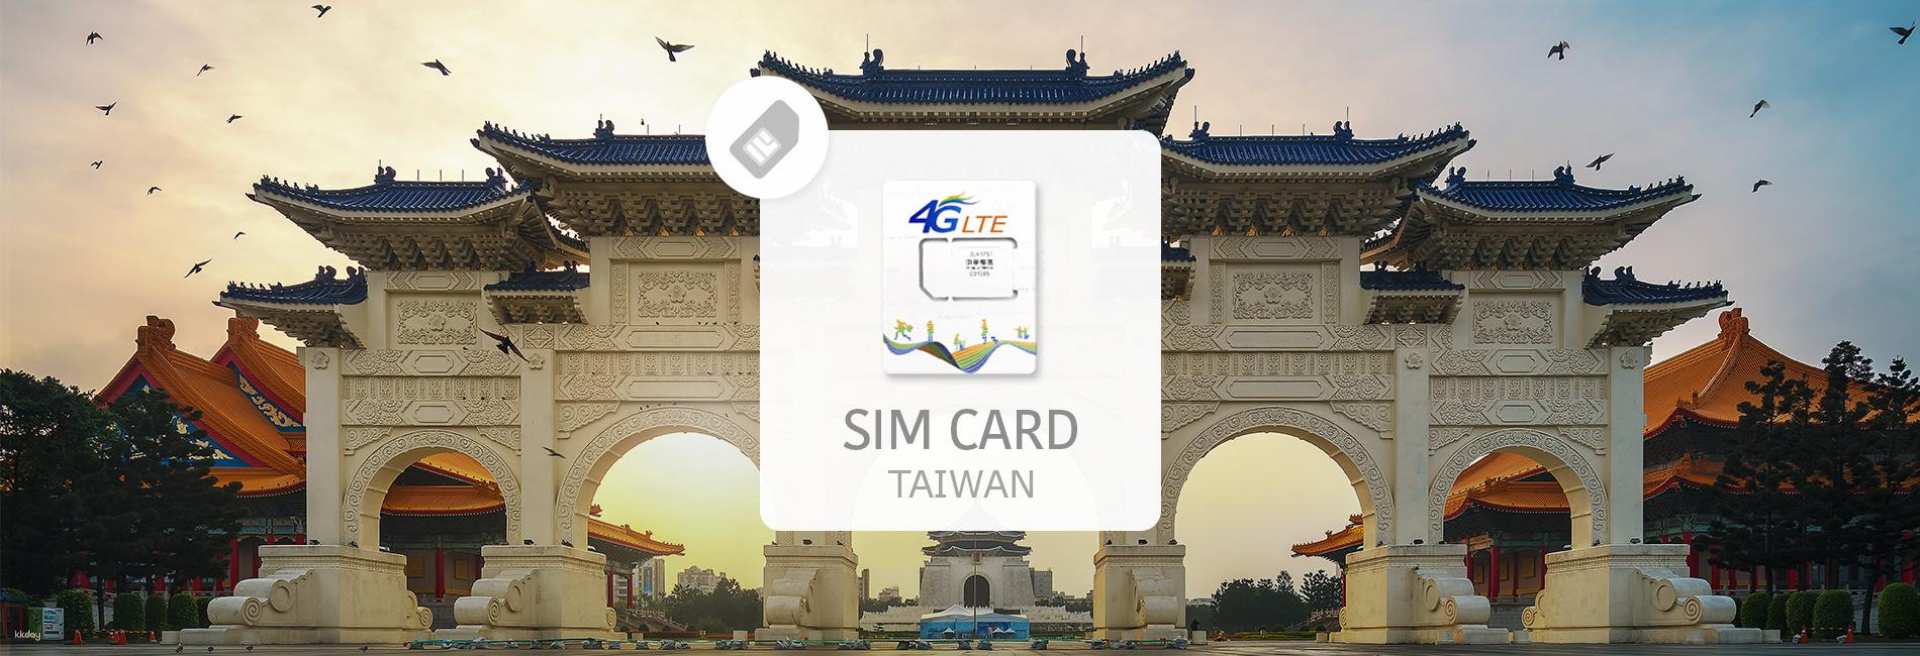 台灣-中華電信4G吃到飽上網卡&通話| 入境管制區領取| 台灣機場